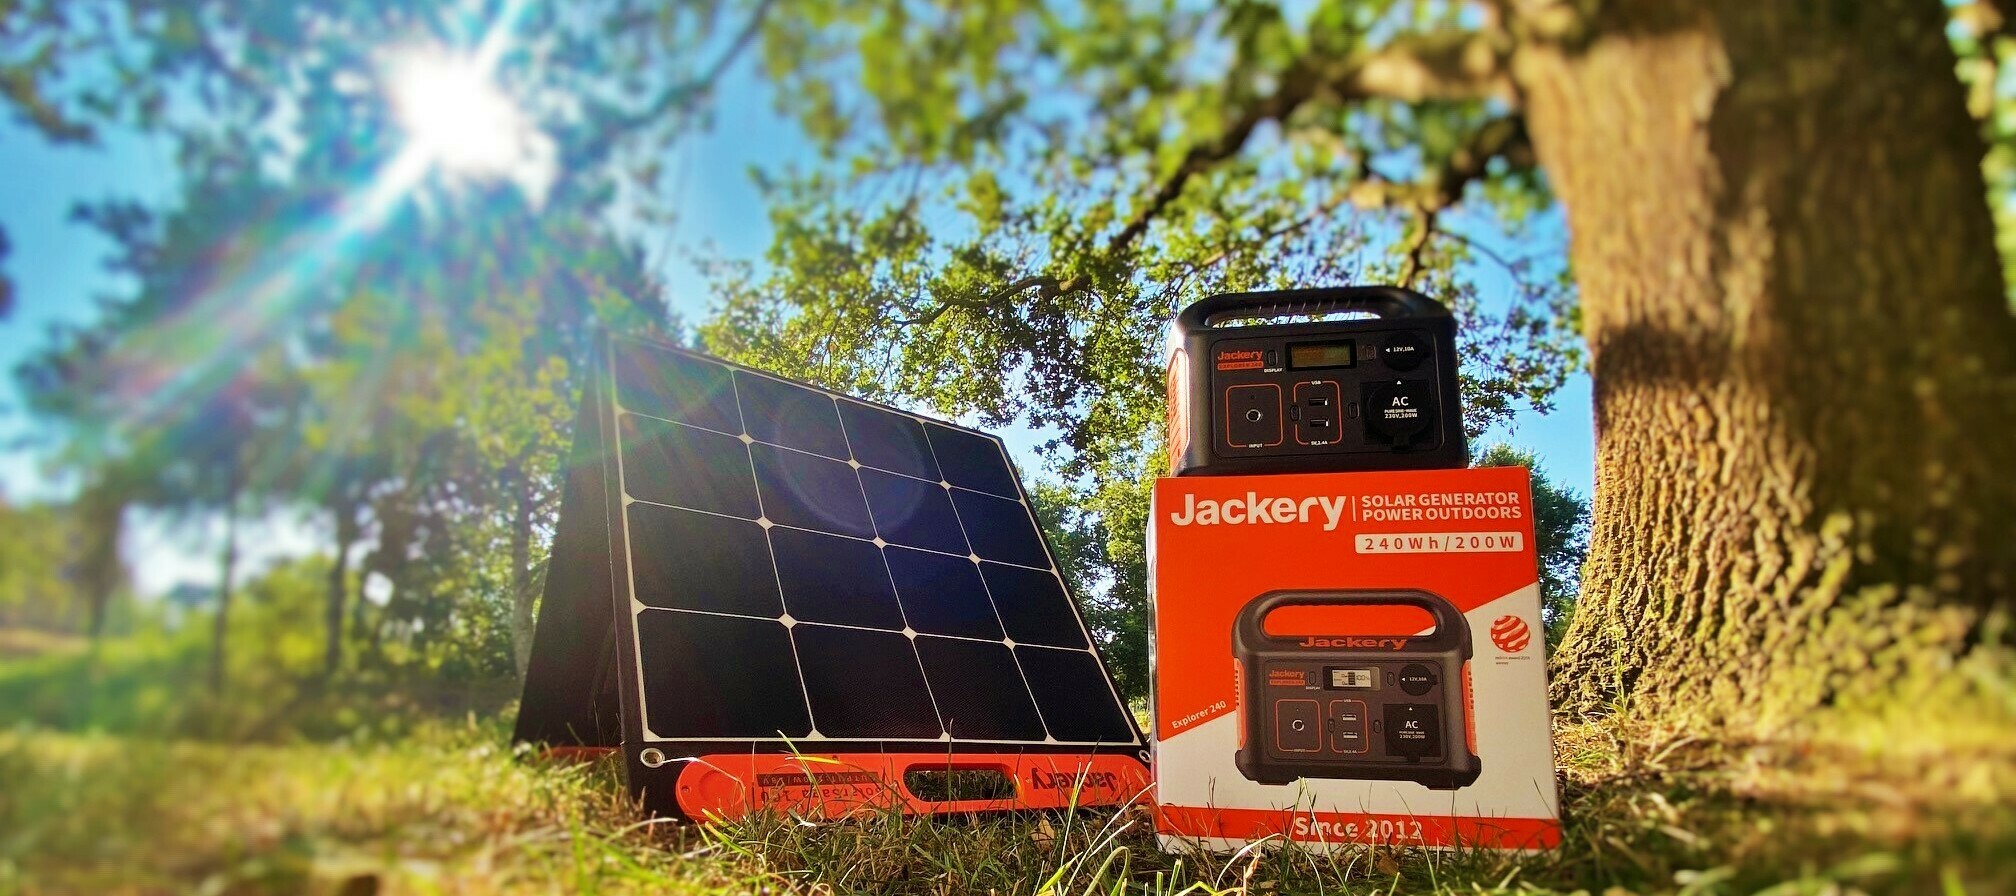 Jackery Solarpanel SolarSaga 100 + Explorer 240 Powerstation - nutze die Kraft der Sonne!